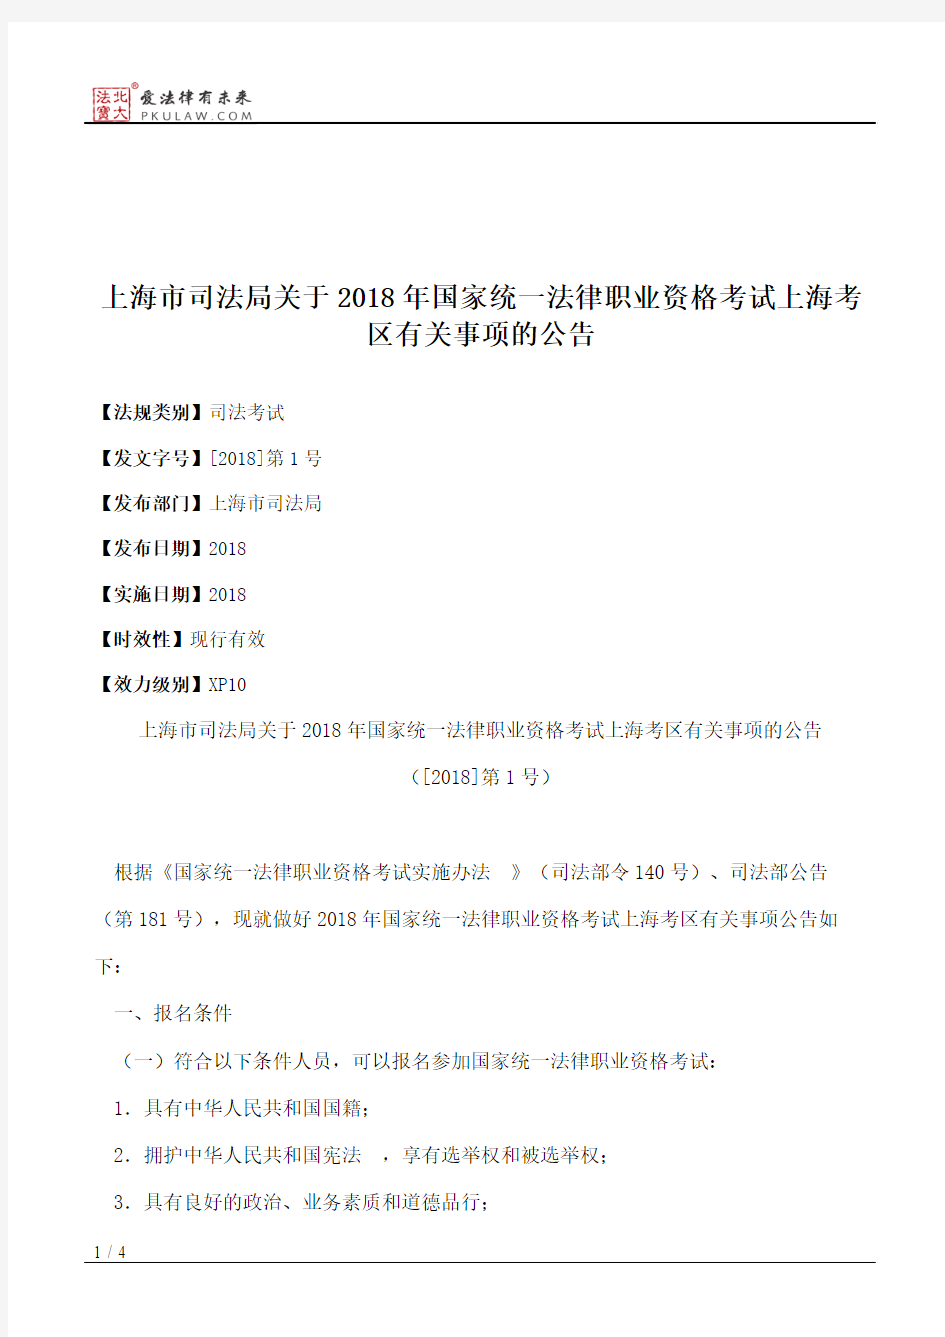 上海市司法局关于2018年国家统一法律职业资格考试上海考区有关事项的公告